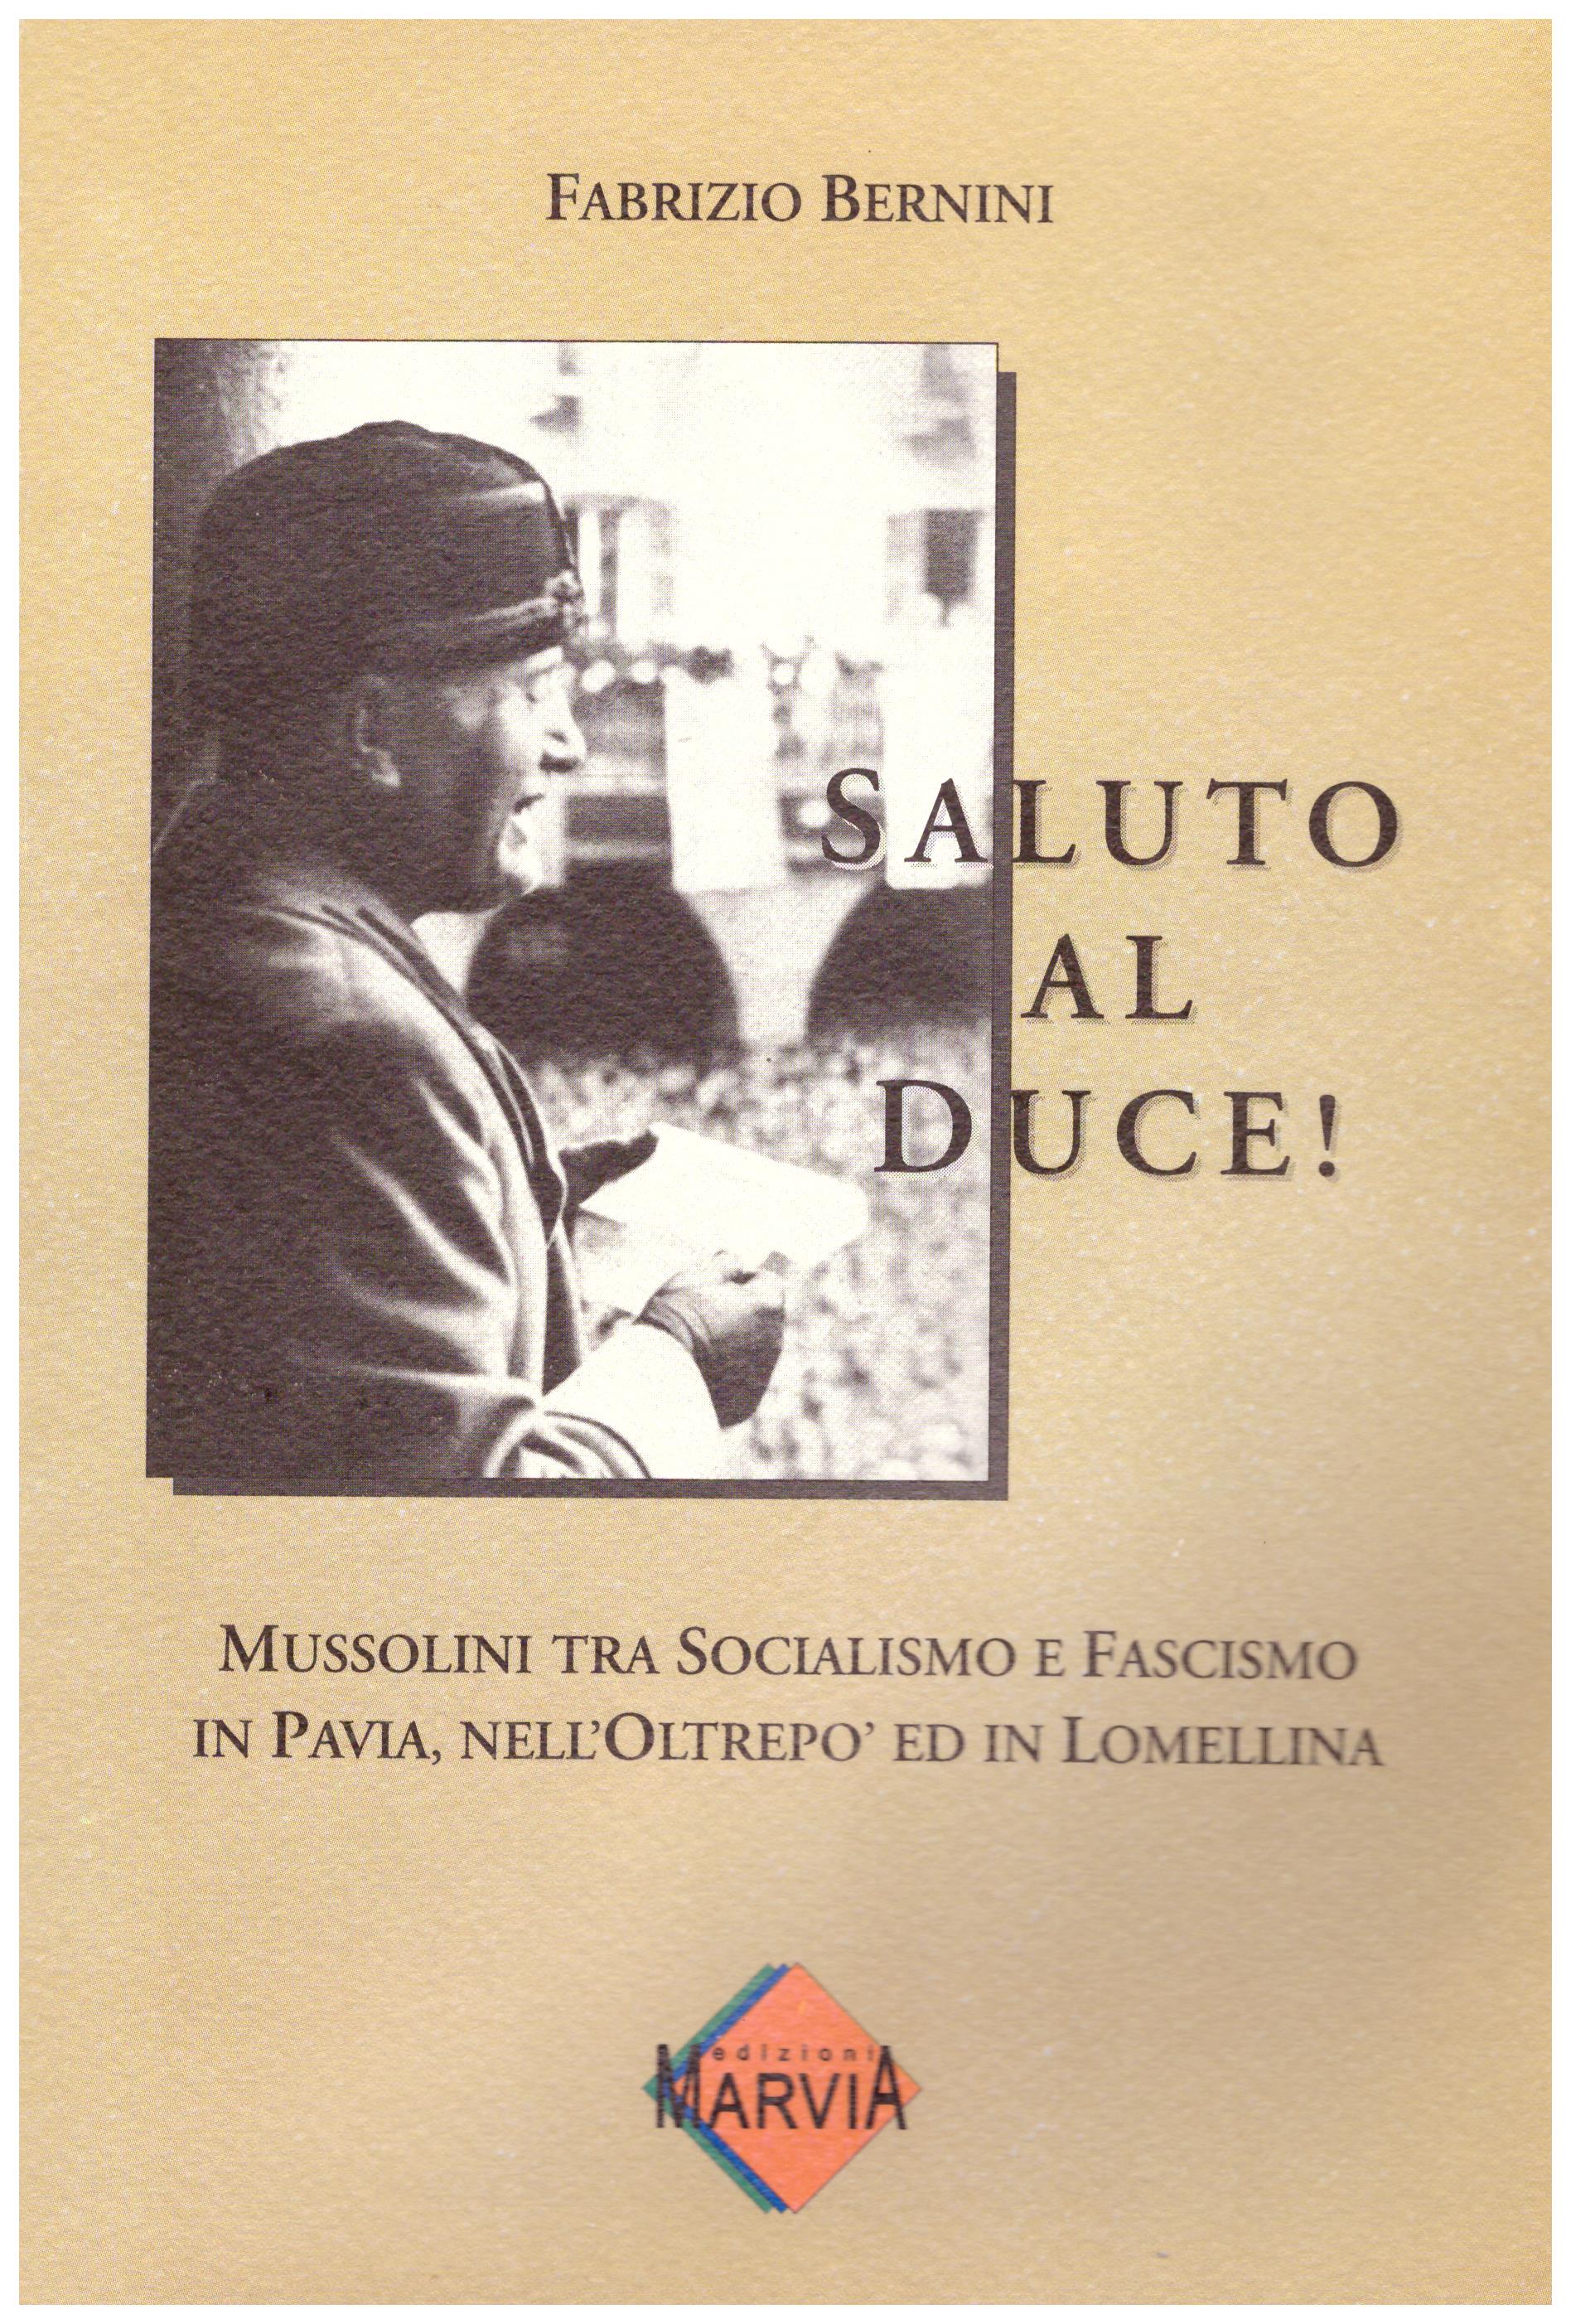 Saluto al duce! Mussolini tra socialismo e fascismo in Pavia, nell’oltrepo’ ed in Lomellina.